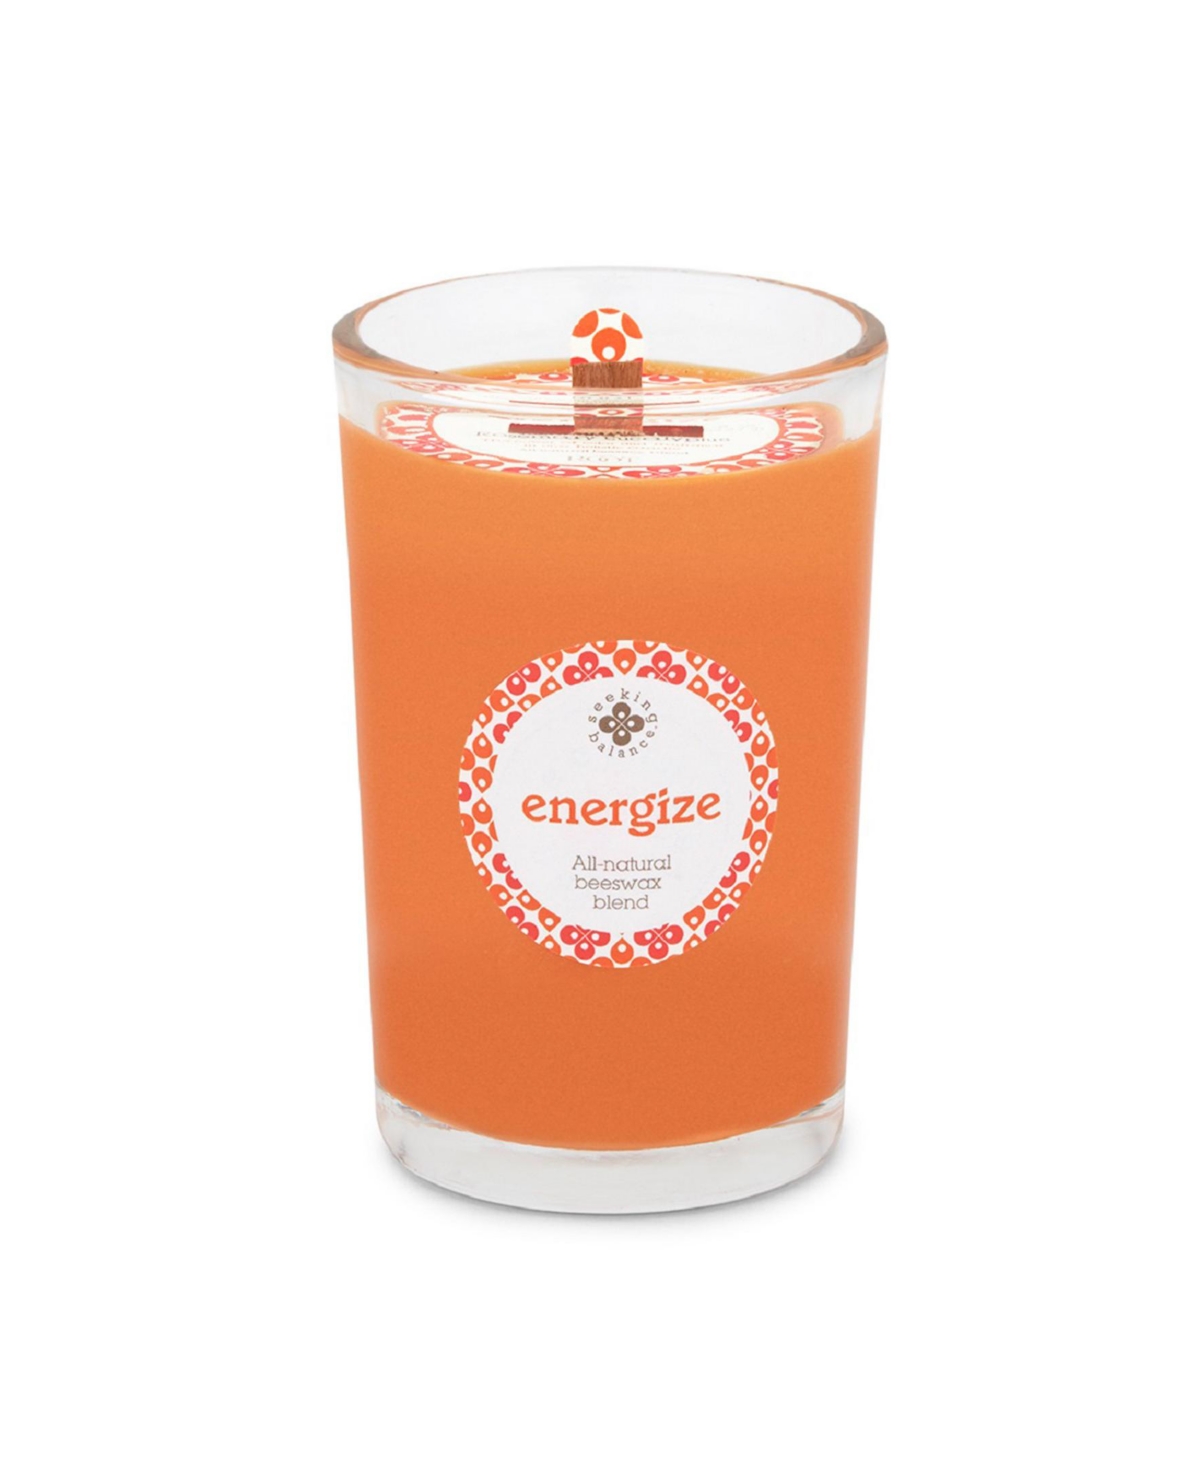 Seeking Balance Energize Rosemary Eucalyptus Spa Jar Candle, 8 oz - Orange